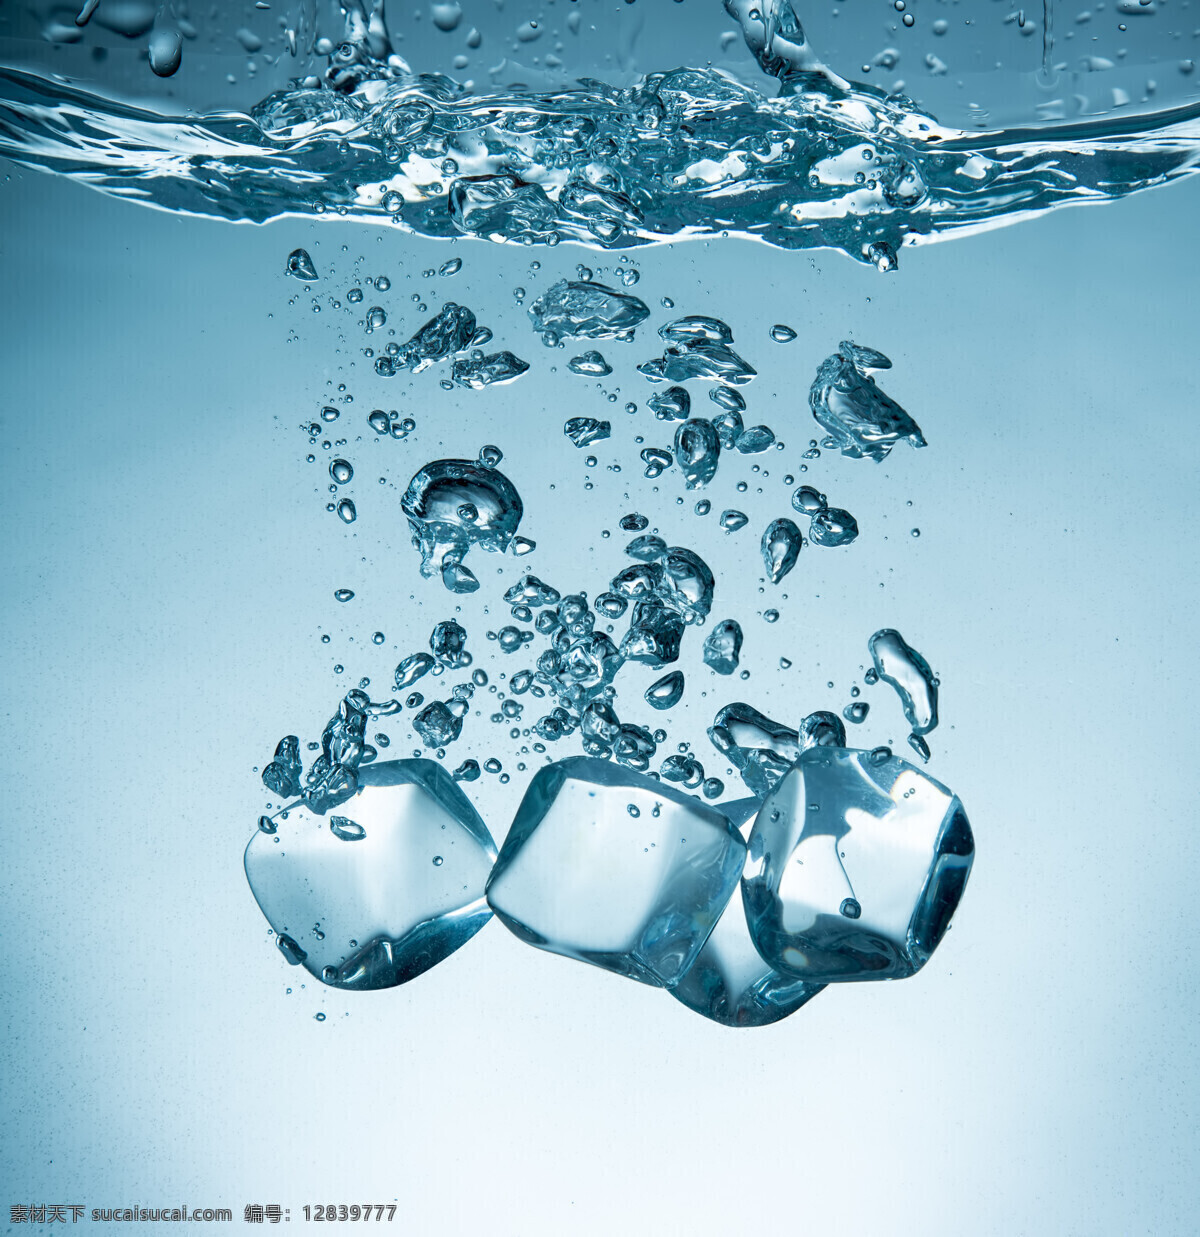 水平面 液体 夏季主题 冰块 冰块设计 水 水滴 落入 水里 冰爽 冰爽夏季 青色 天蓝色